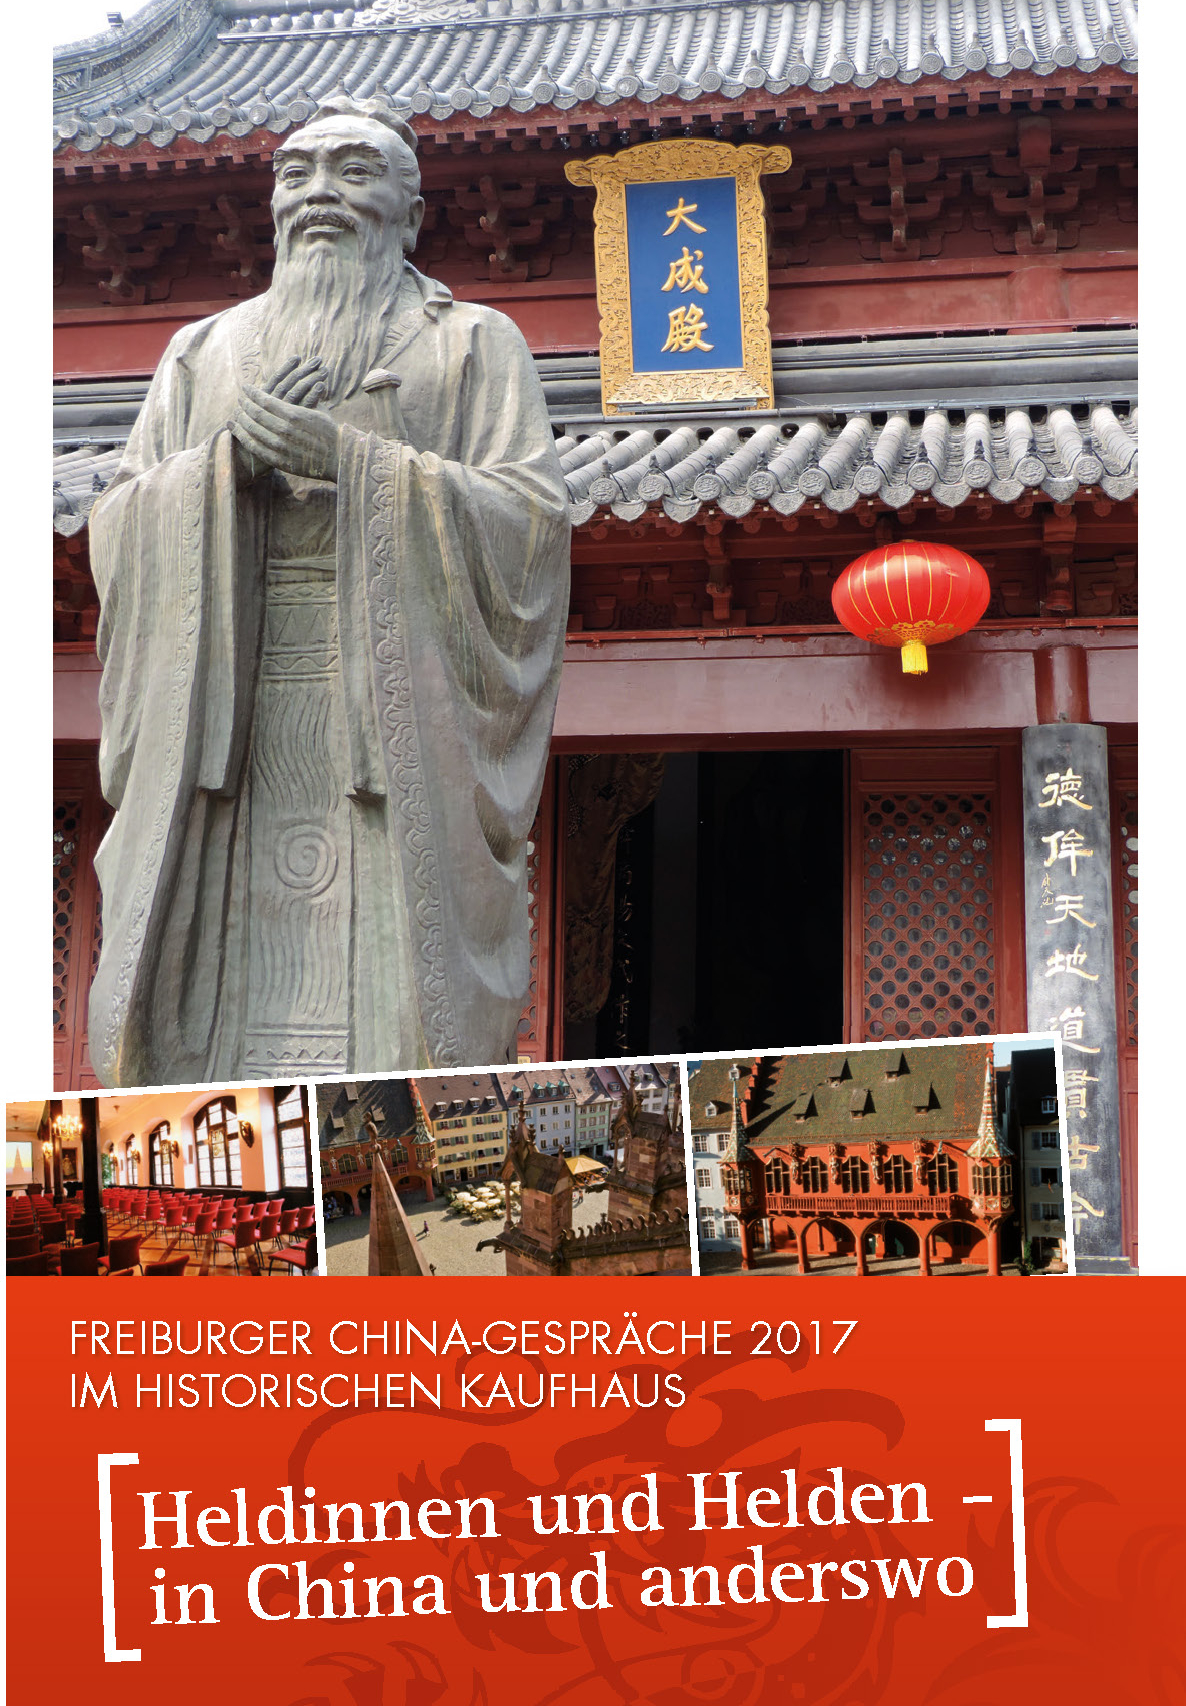 Freiburger China-Gespräche 2017 "Heldinnen und Helden - in China und anderswo"